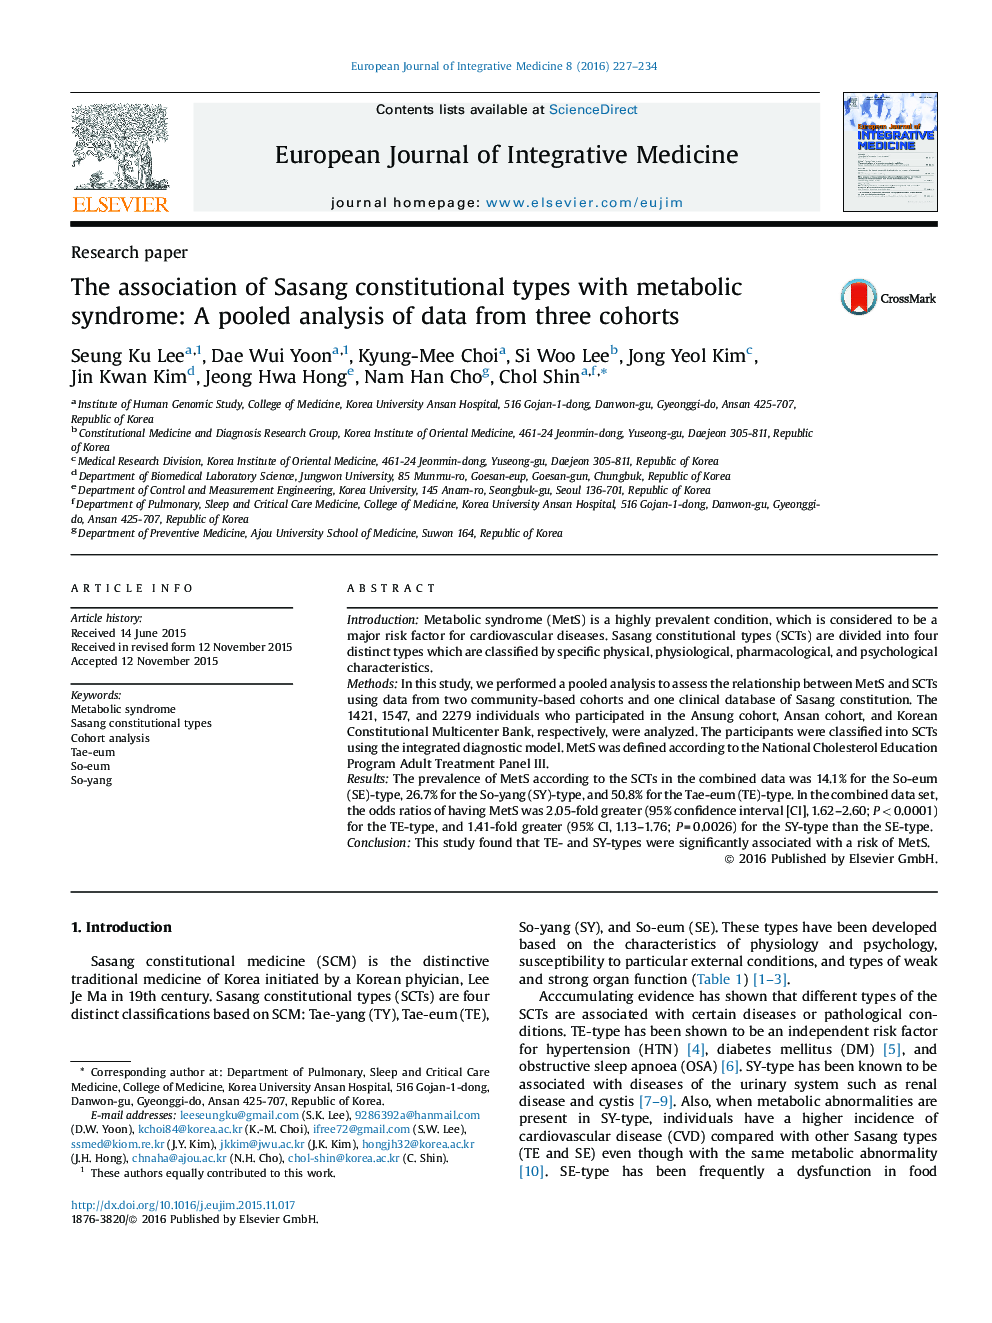 ارتباط انواع وضع طبیعى ساسانگ مبتلا به سندرم متابولیک: تجزیه و تحلیل حاصل از داده ها از سه گروه